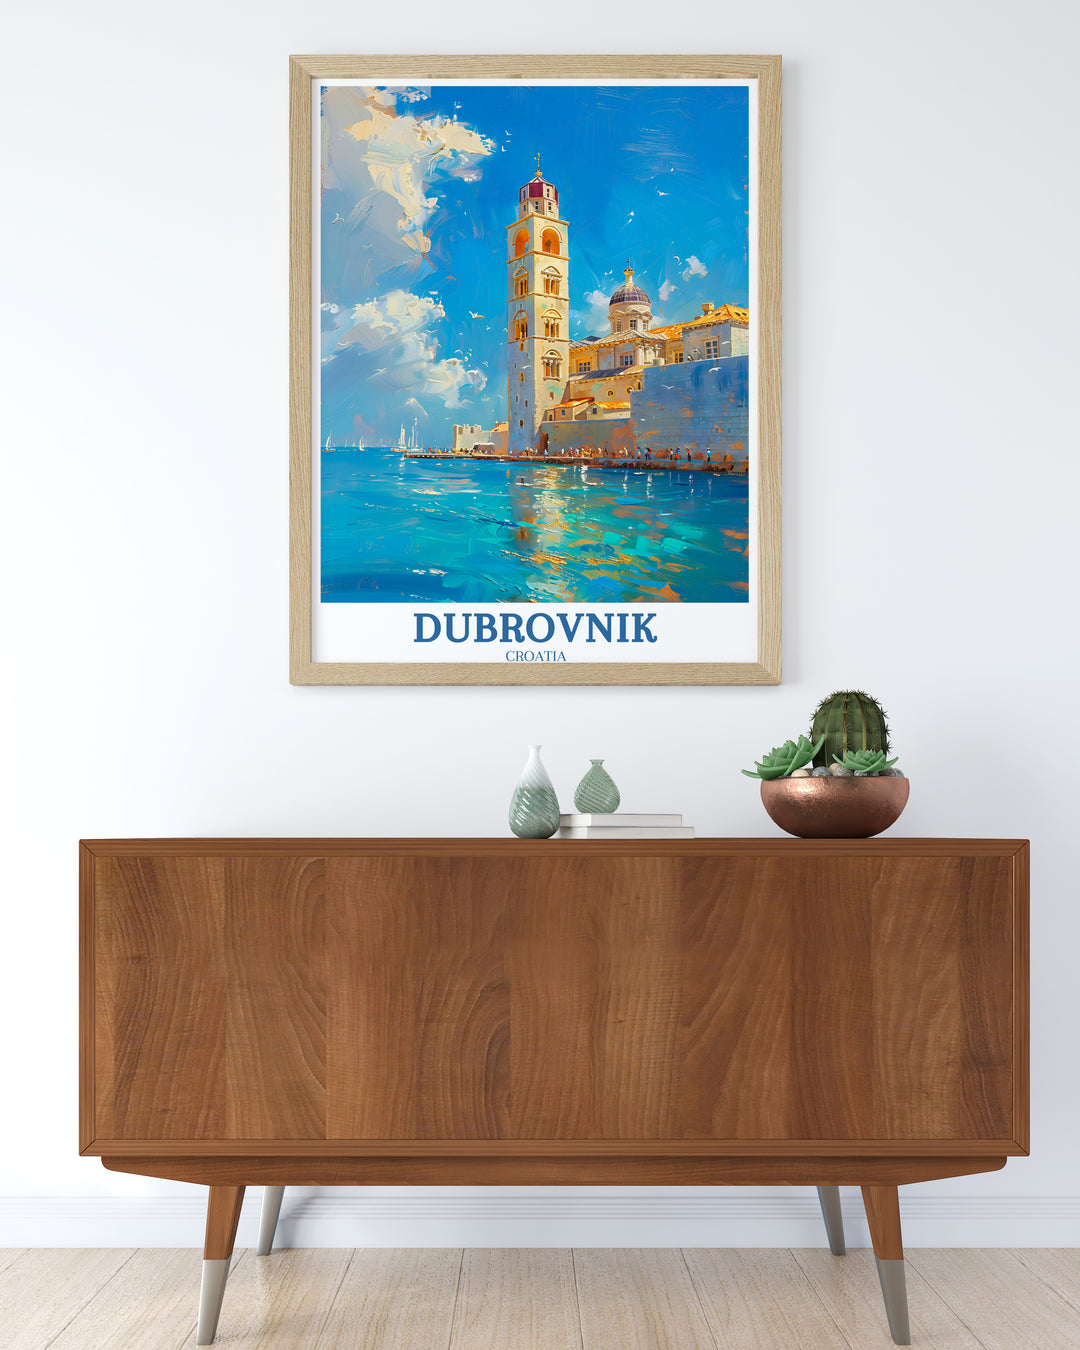 Découvrez la beauté de Dubrovnik - Tirages d'art, affiches et décorations murales de Dubrovnik, parfaits pour les amateurs de décoration murale et d'affiches